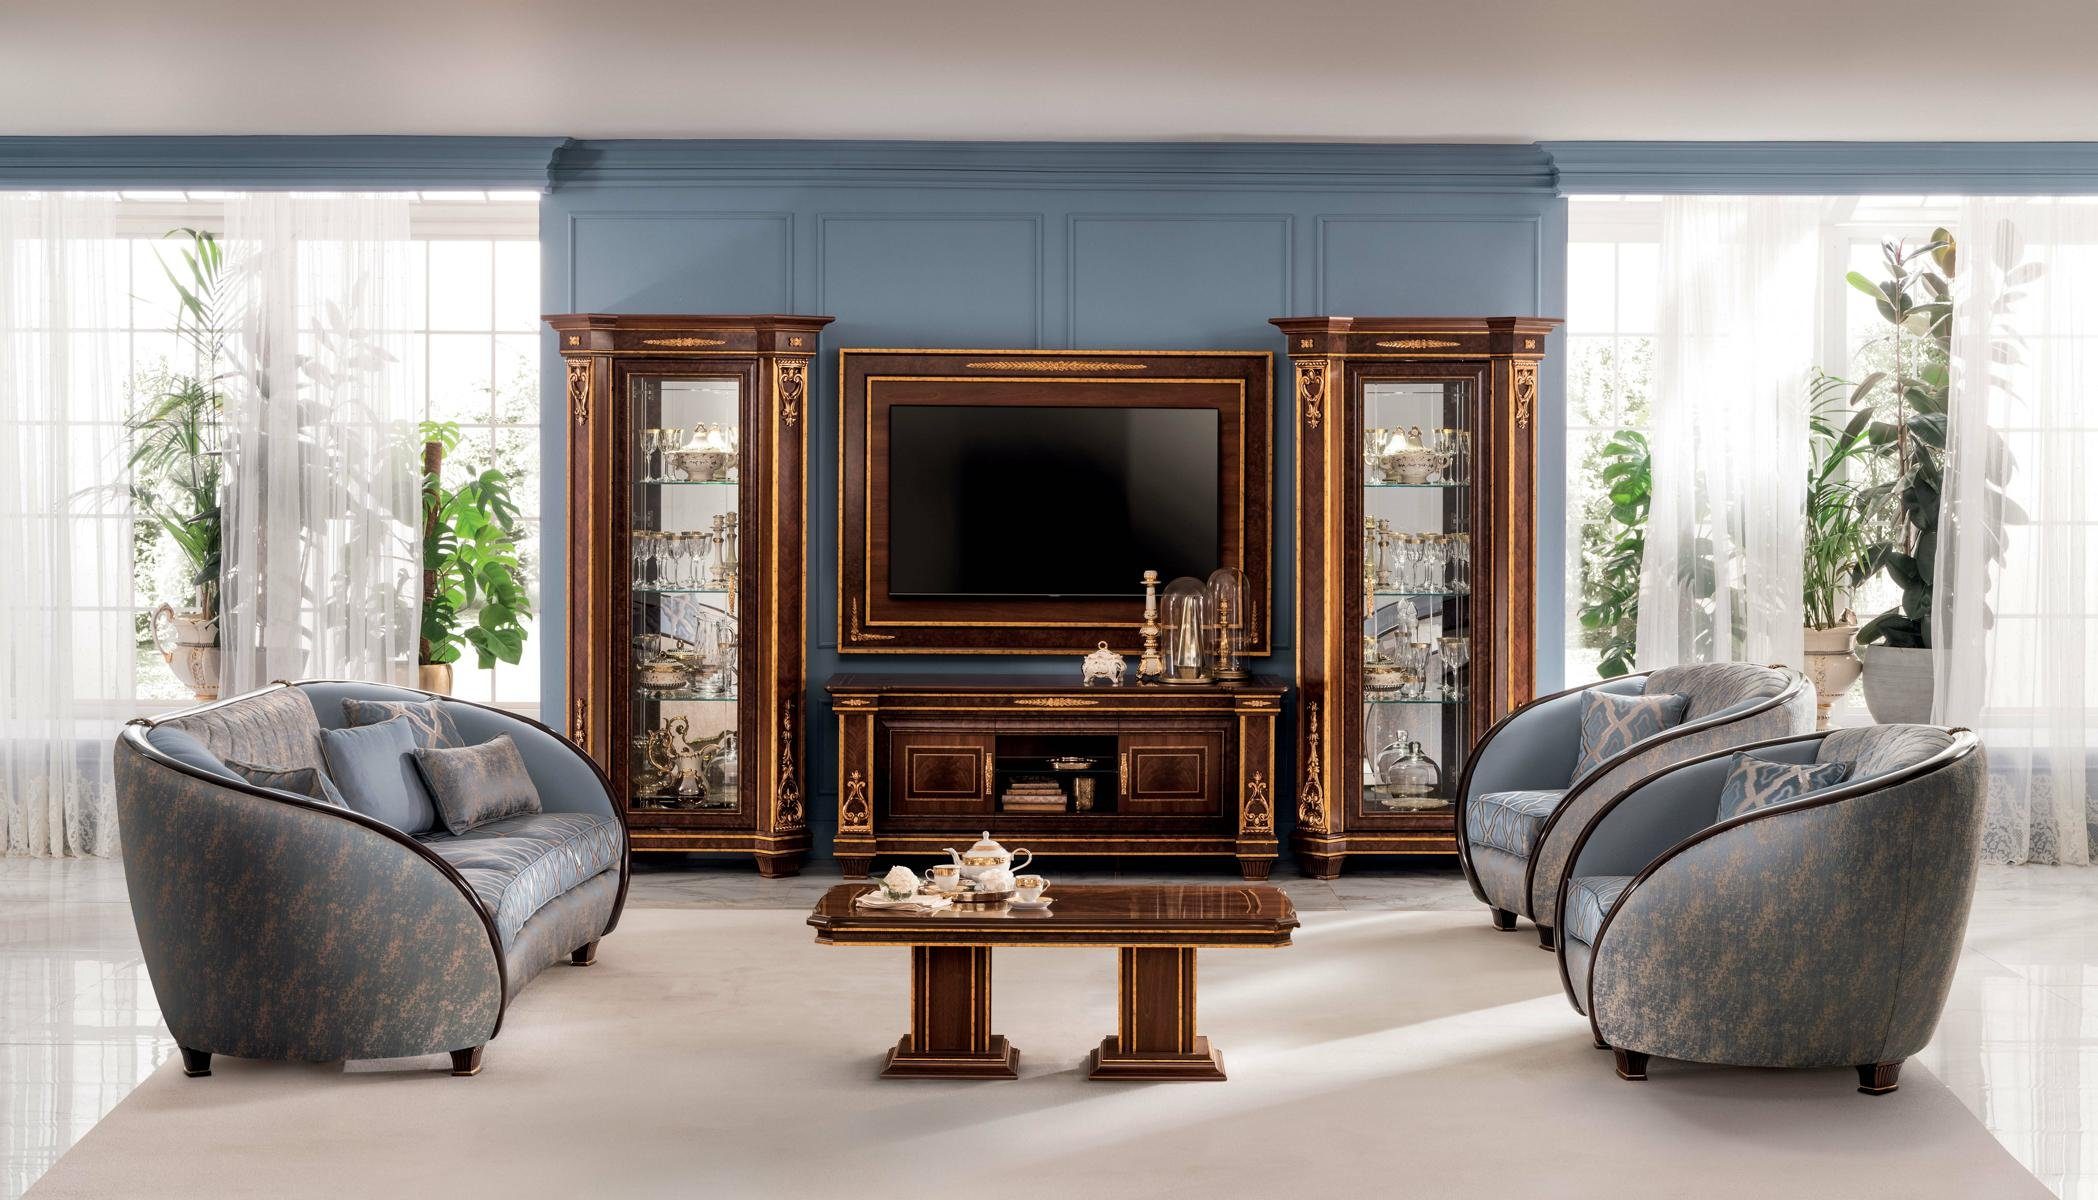 JVmoebel Wohnzimmer-Set, Luxus Klasse 2+1 Neu Italienische Möbel Sofagarnitur arredoclassic™ Sofa Couch